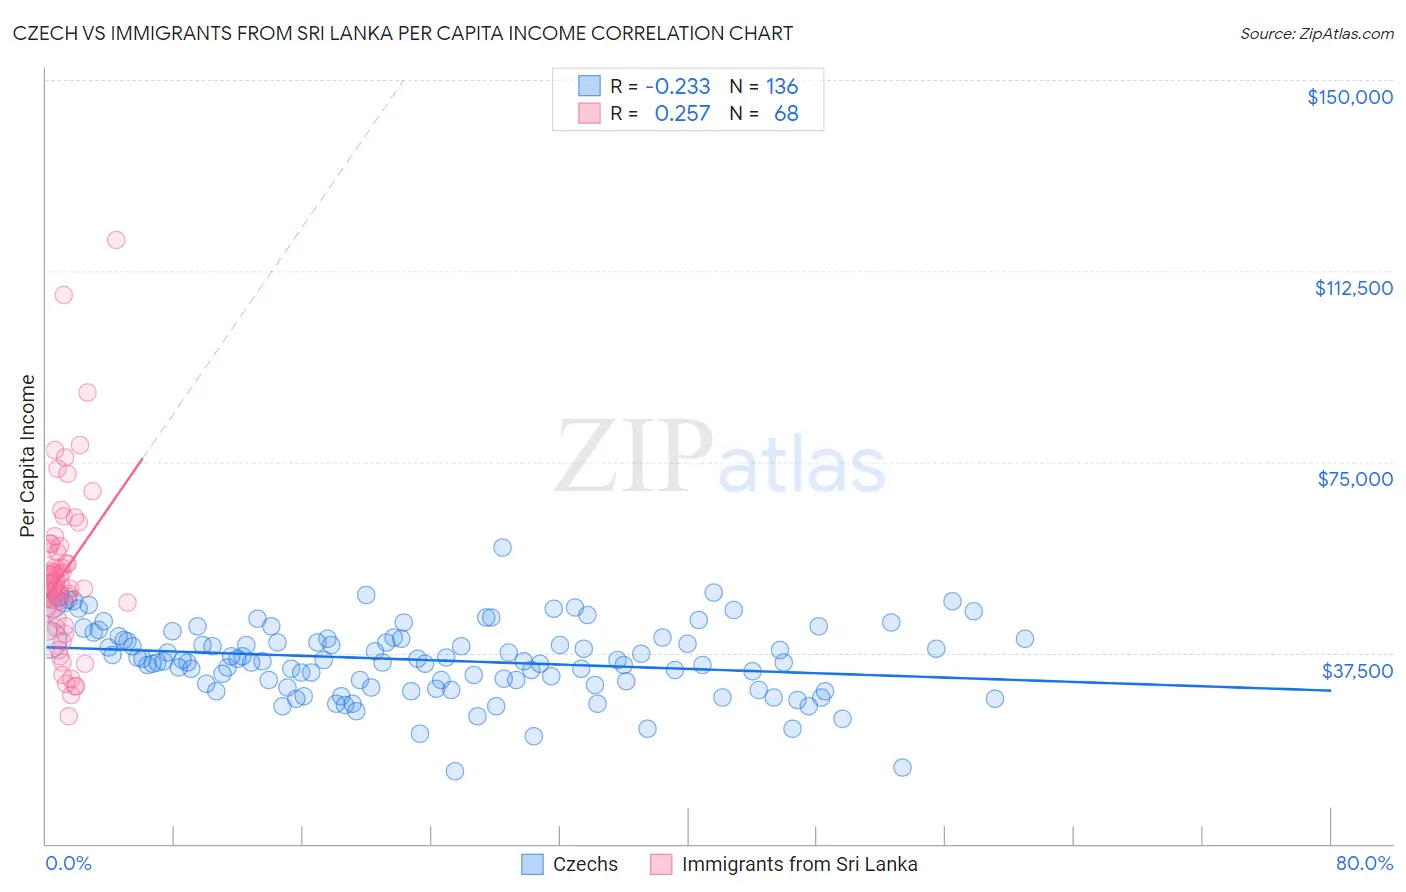 Czech vs Immigrants from Sri Lanka Per Capita Income